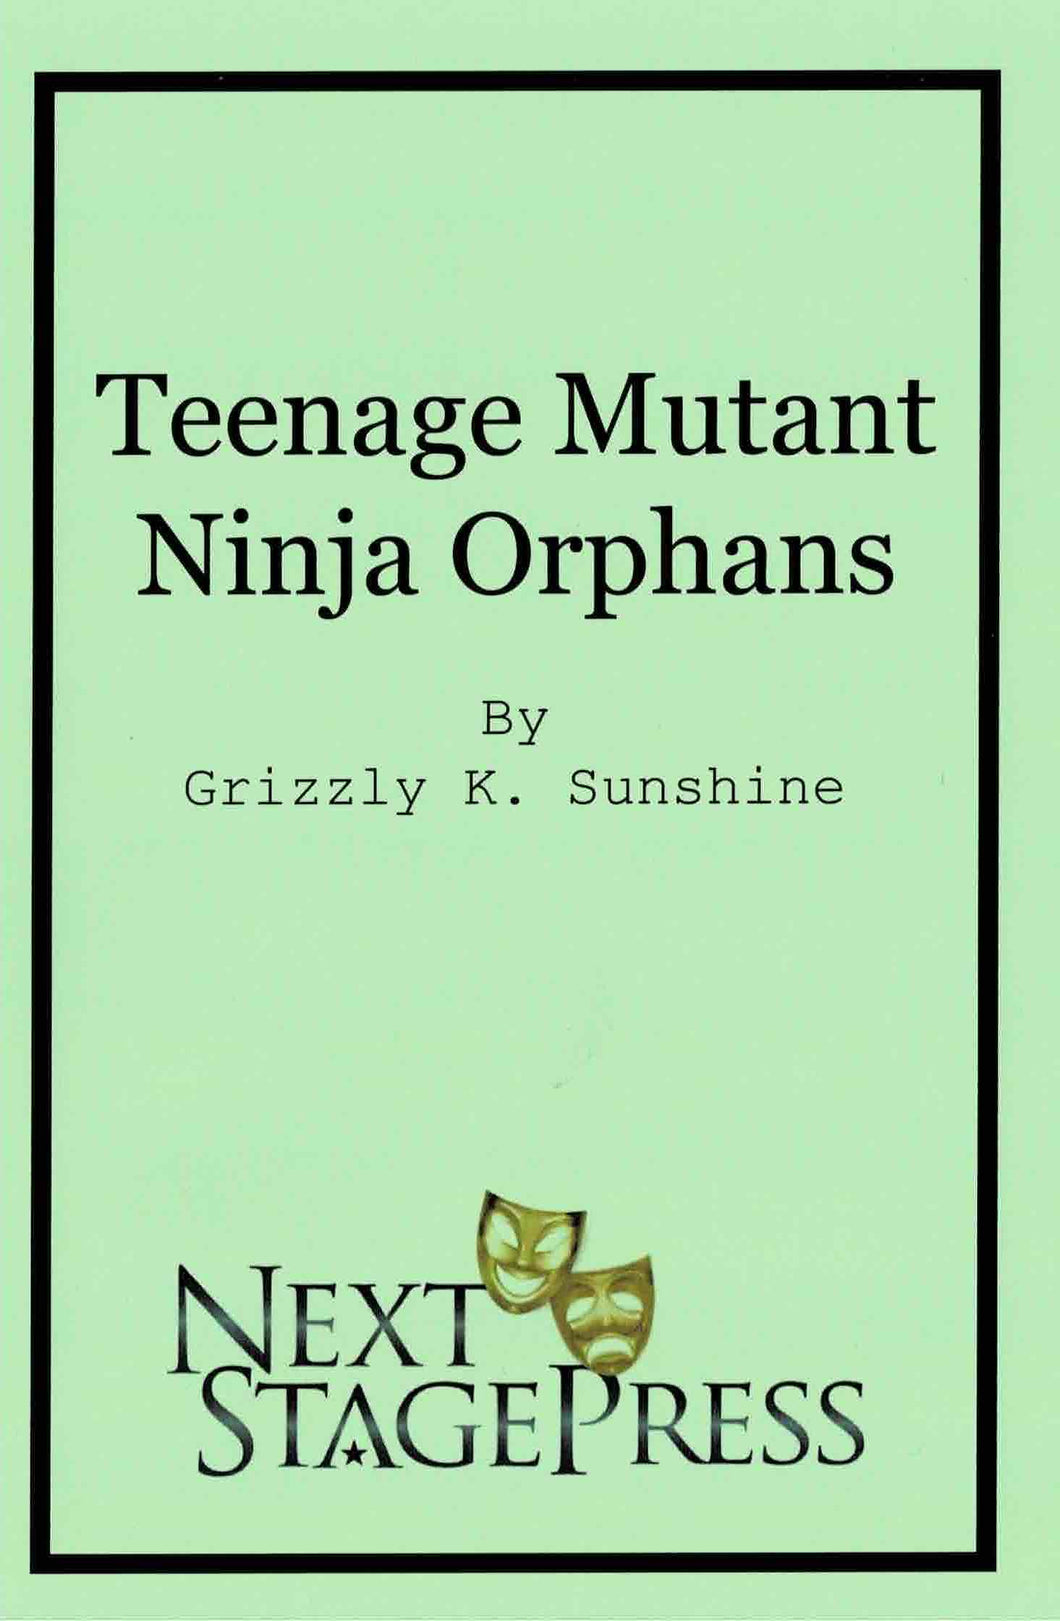 Teenage Mutant Ninja Orphans